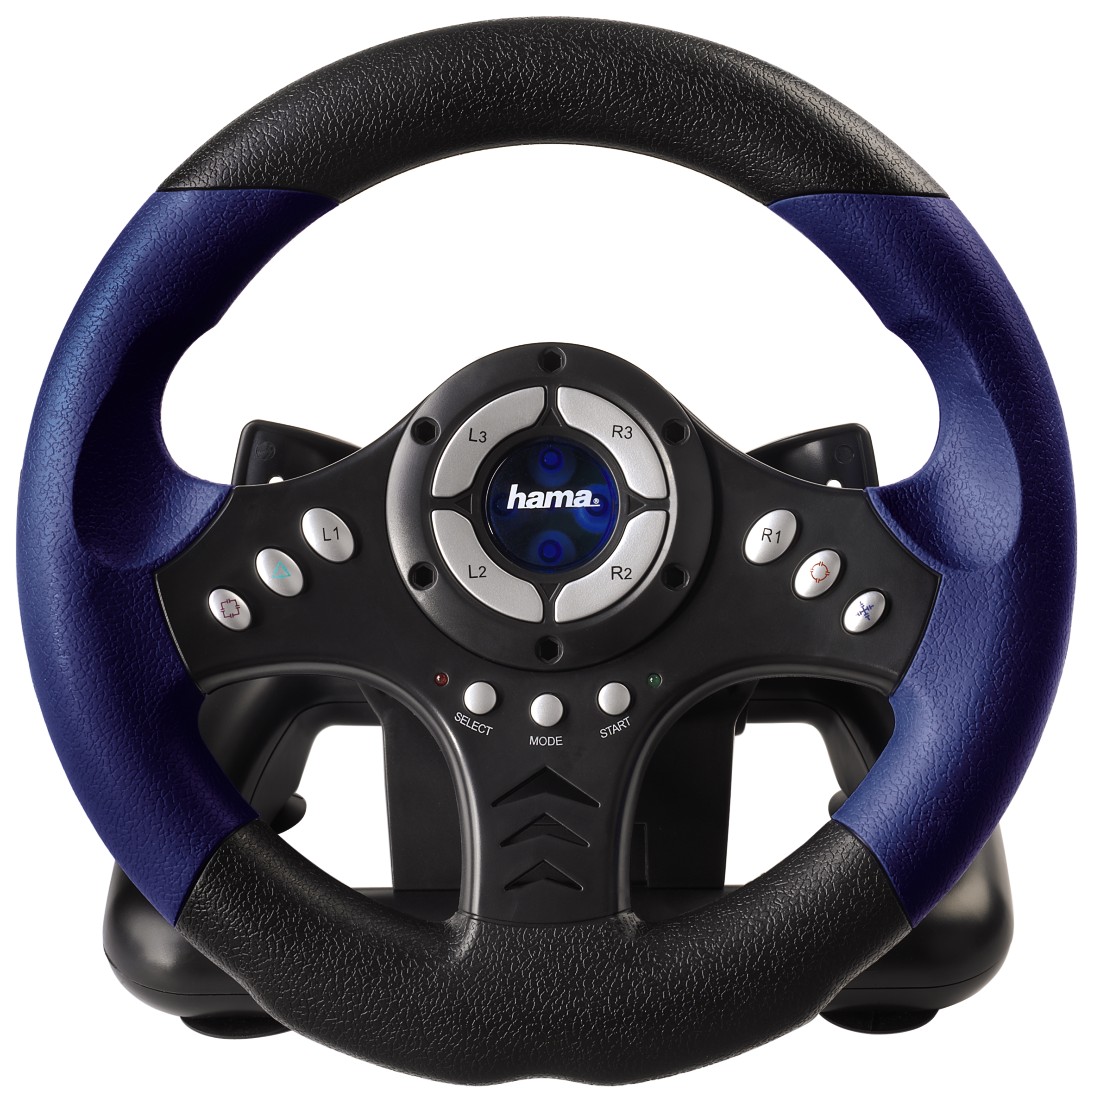 00034364 Hama Racing Wheel "Thunder V18" for PS2 | hama.com